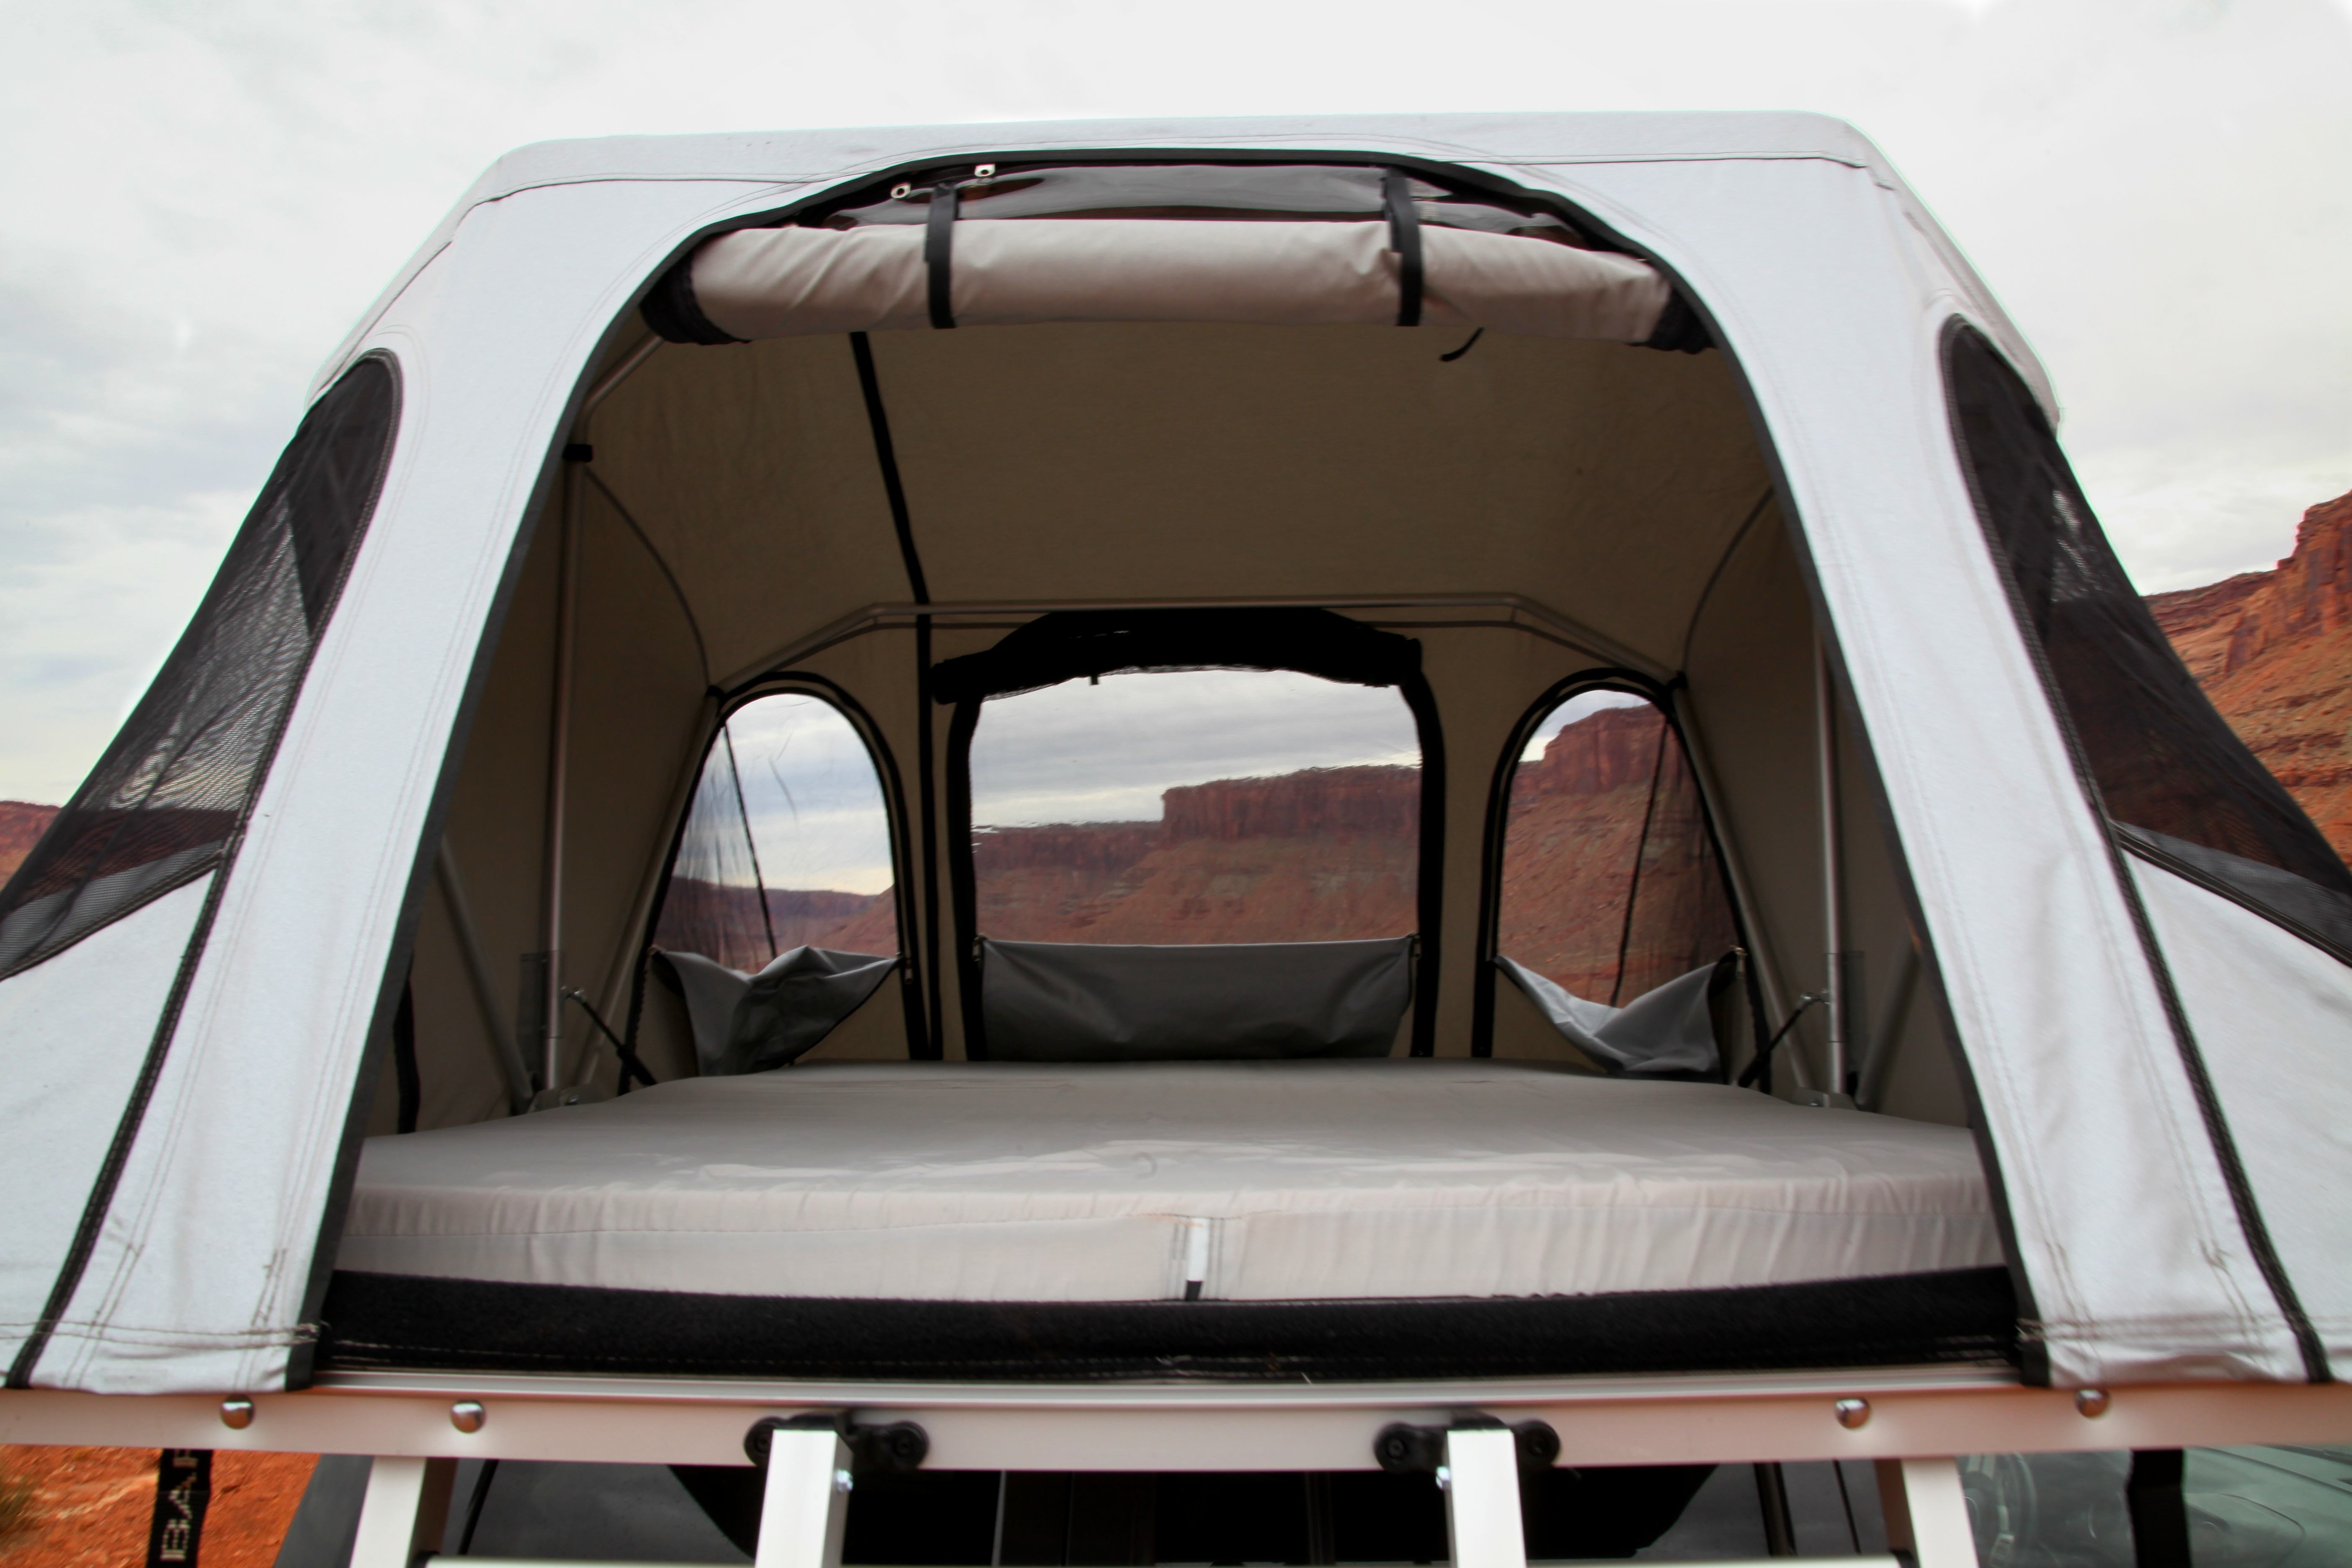 Автопалатки james baroud: Палатки на крышу автомобиля James Baroud - Отличная палатка на крыше! А маркизу я бы выбрал другую :) #палатканакрышуавтомобиля #автопалатка #jamesbaroud #кемпинг #маркизаавтомобильная #Toyota